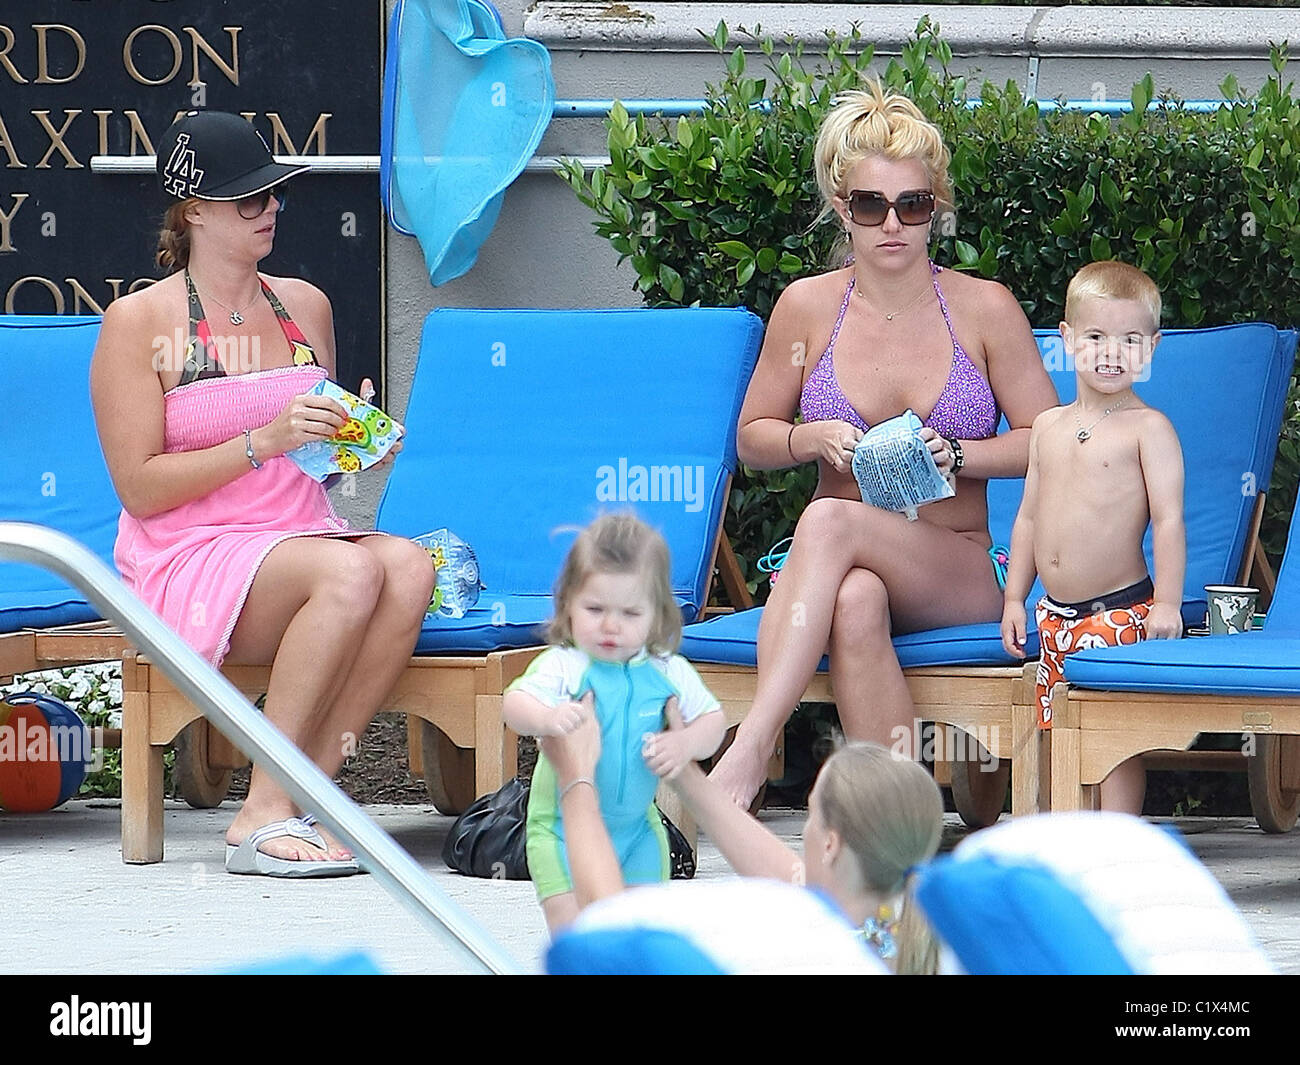 Sängerin Britney Spears Sprengung schwimmen Armbinden für ihren Sohn am Pool im Ritz-Carlton Hotel in Marina Del Rey. Los Stockfoto